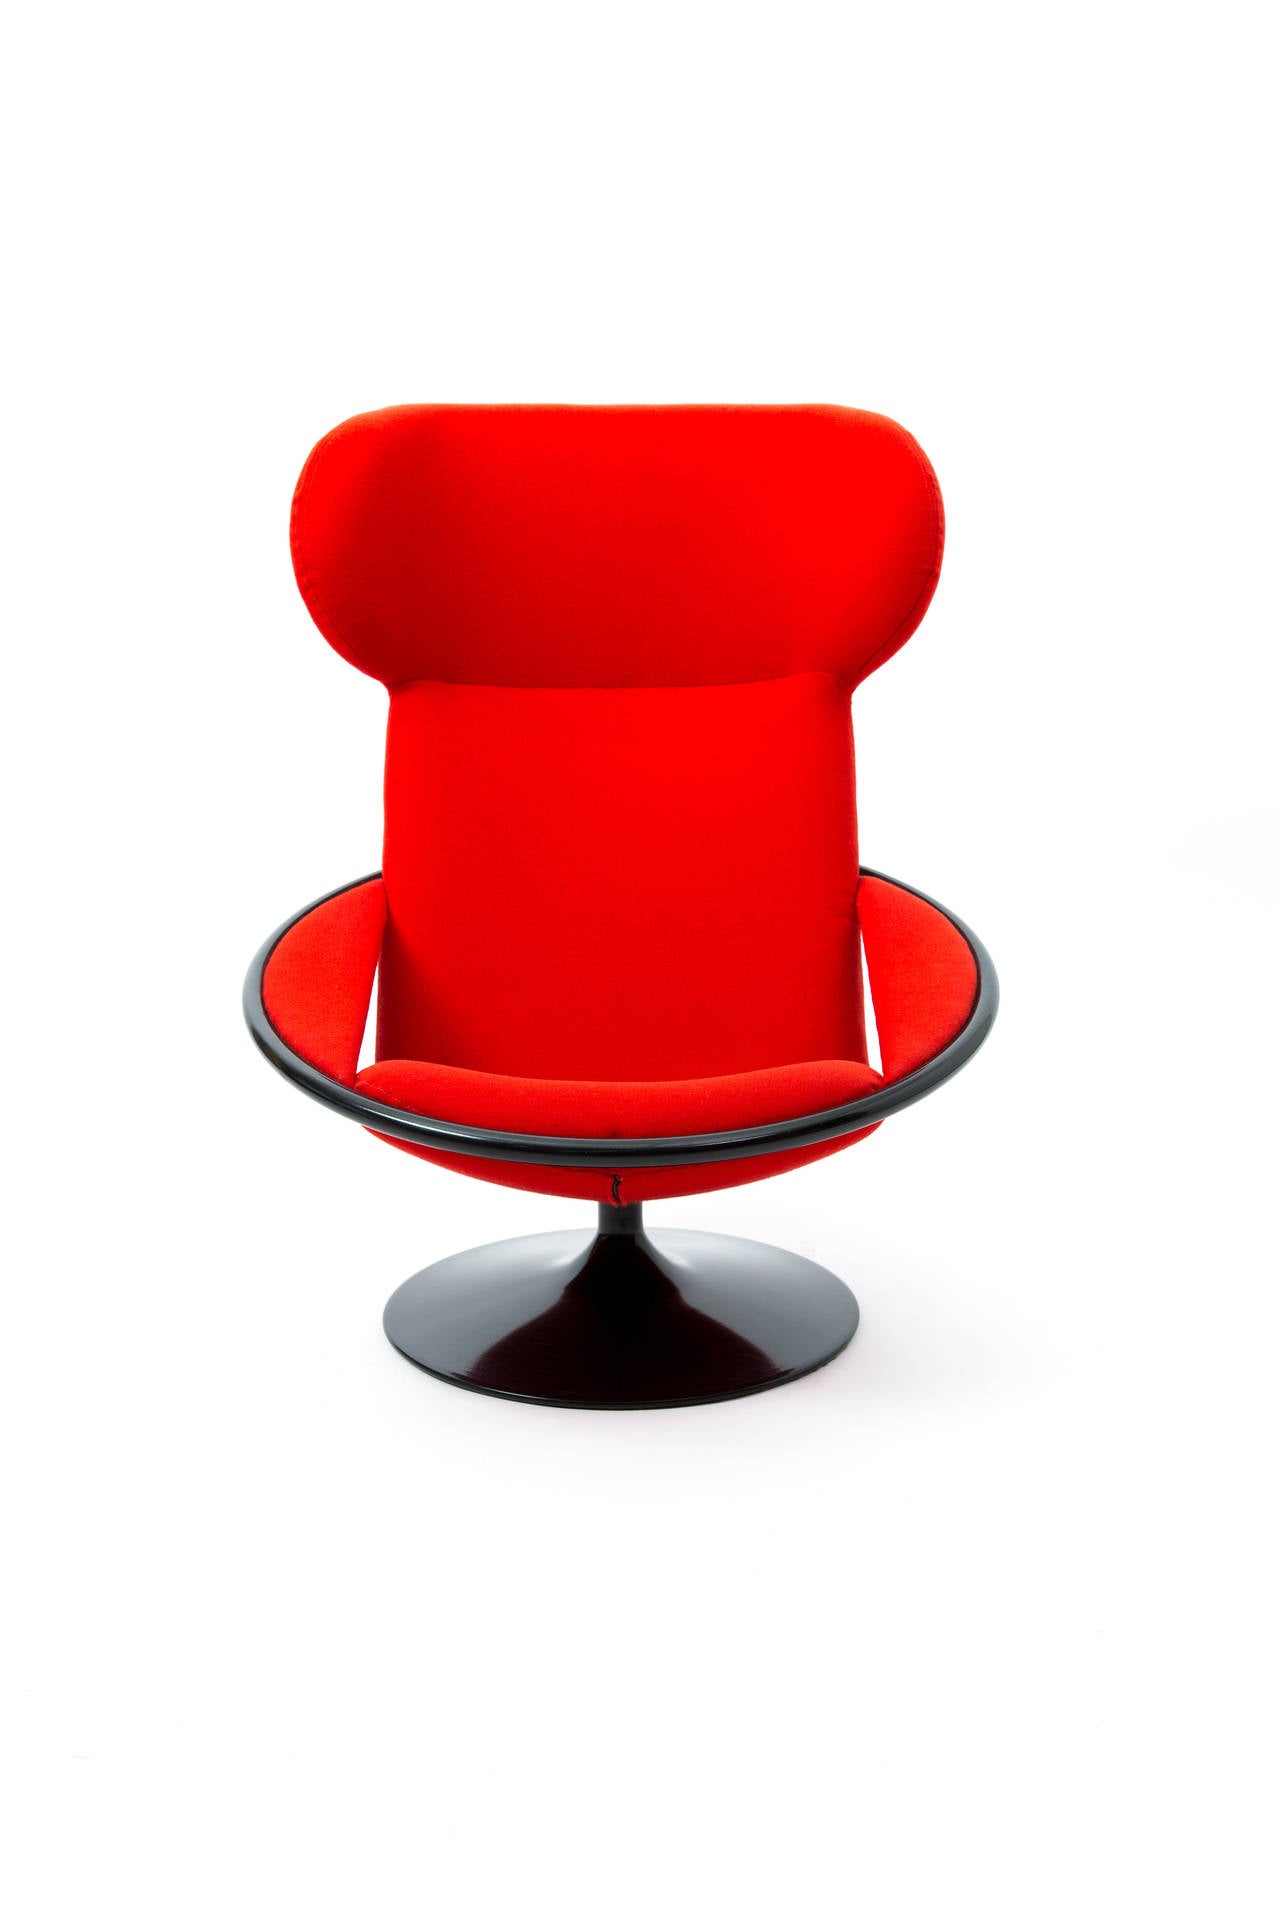 Metal Artifort Dutch Design Geoffrey Harcourt Lounge Chair